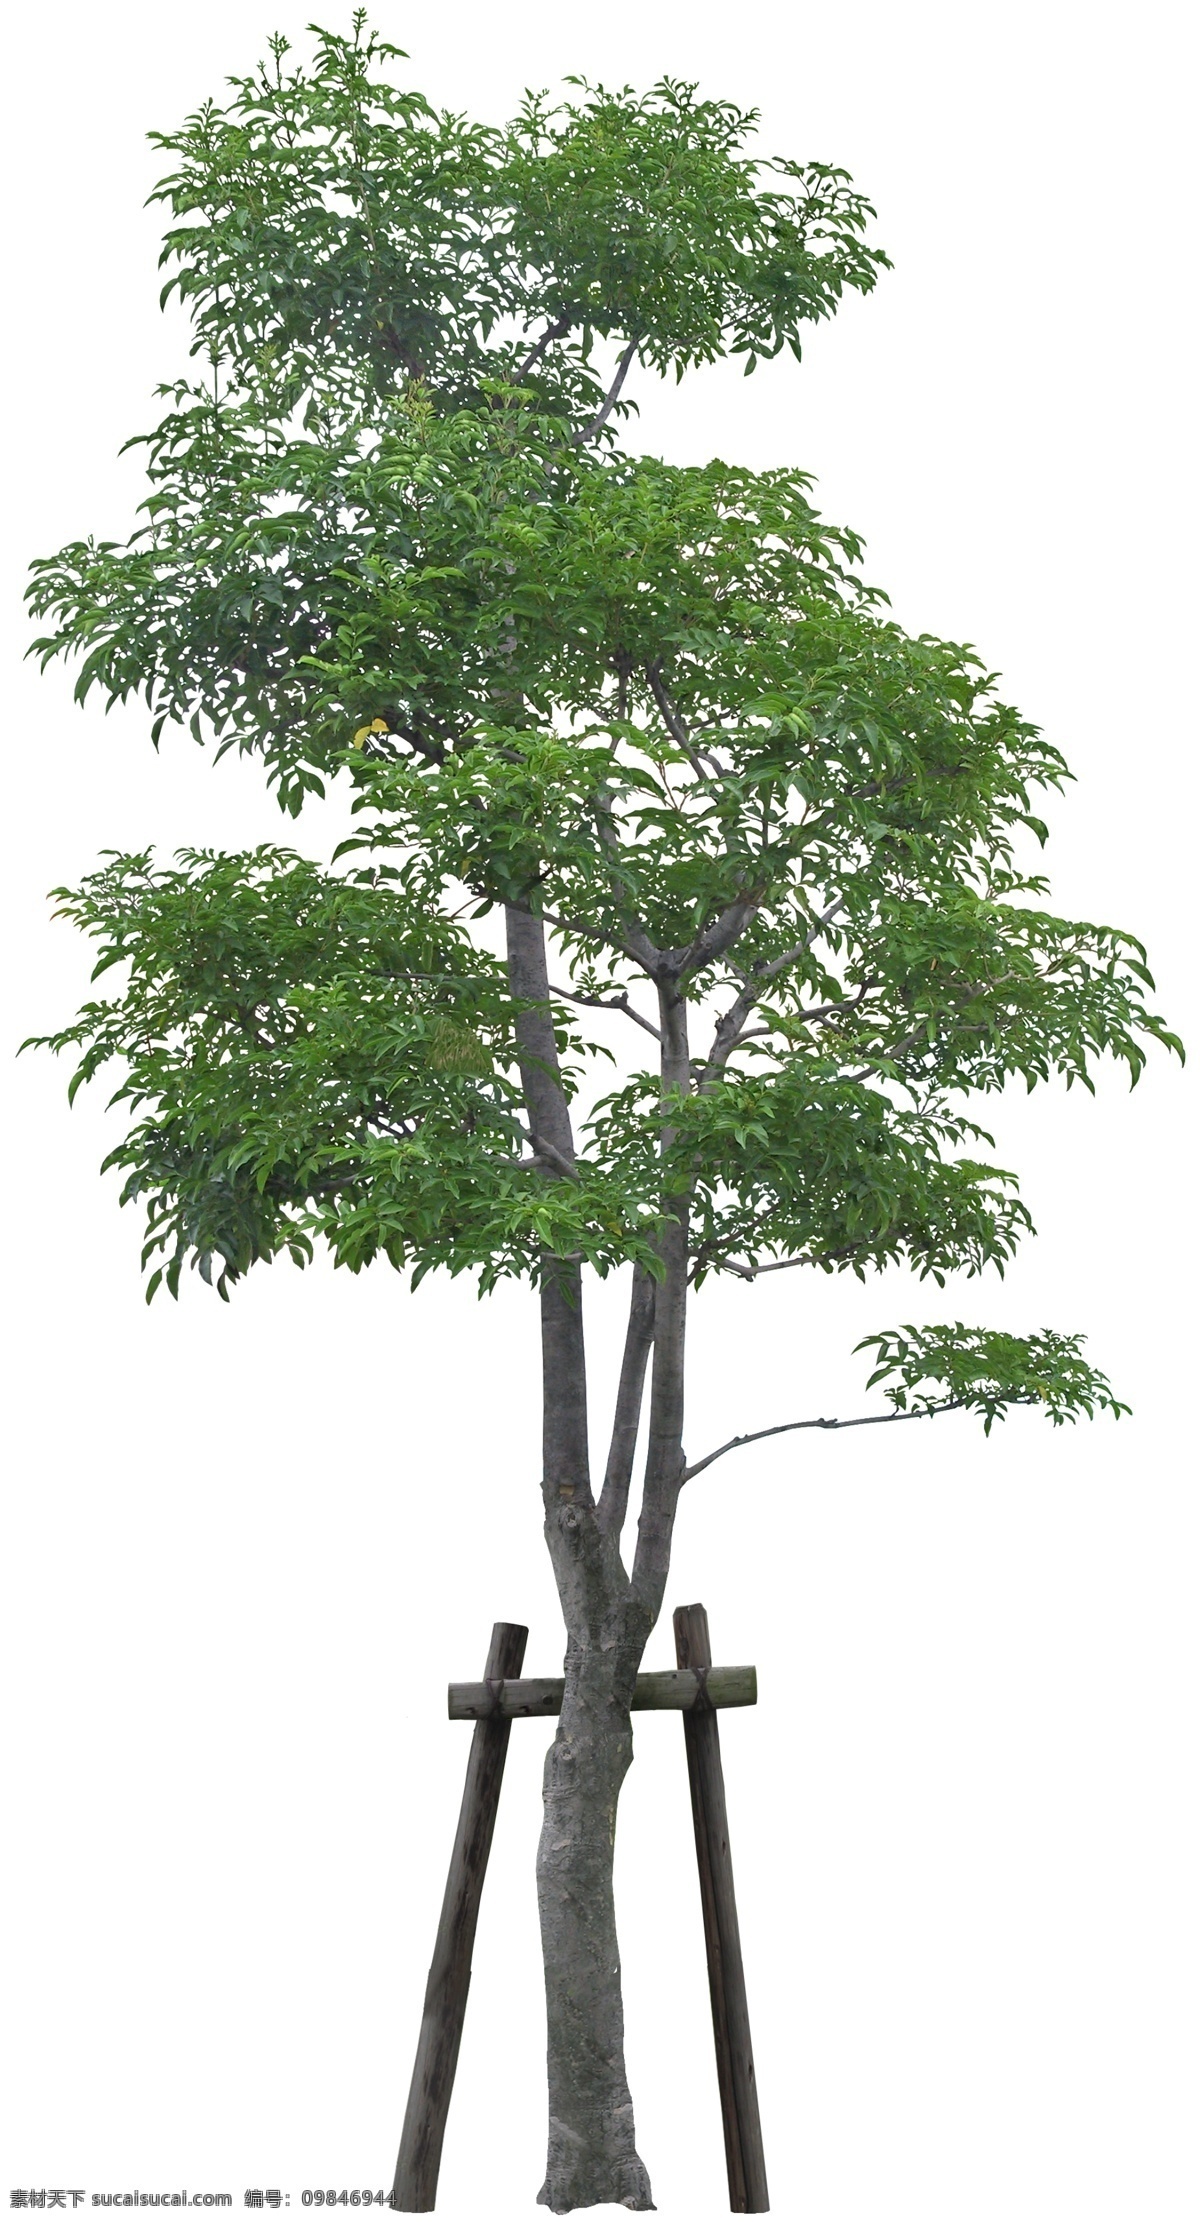 梣psd 梣 乔木 树木 植物素材 psd素材 植物 绿化素材 环境设计 景观设计